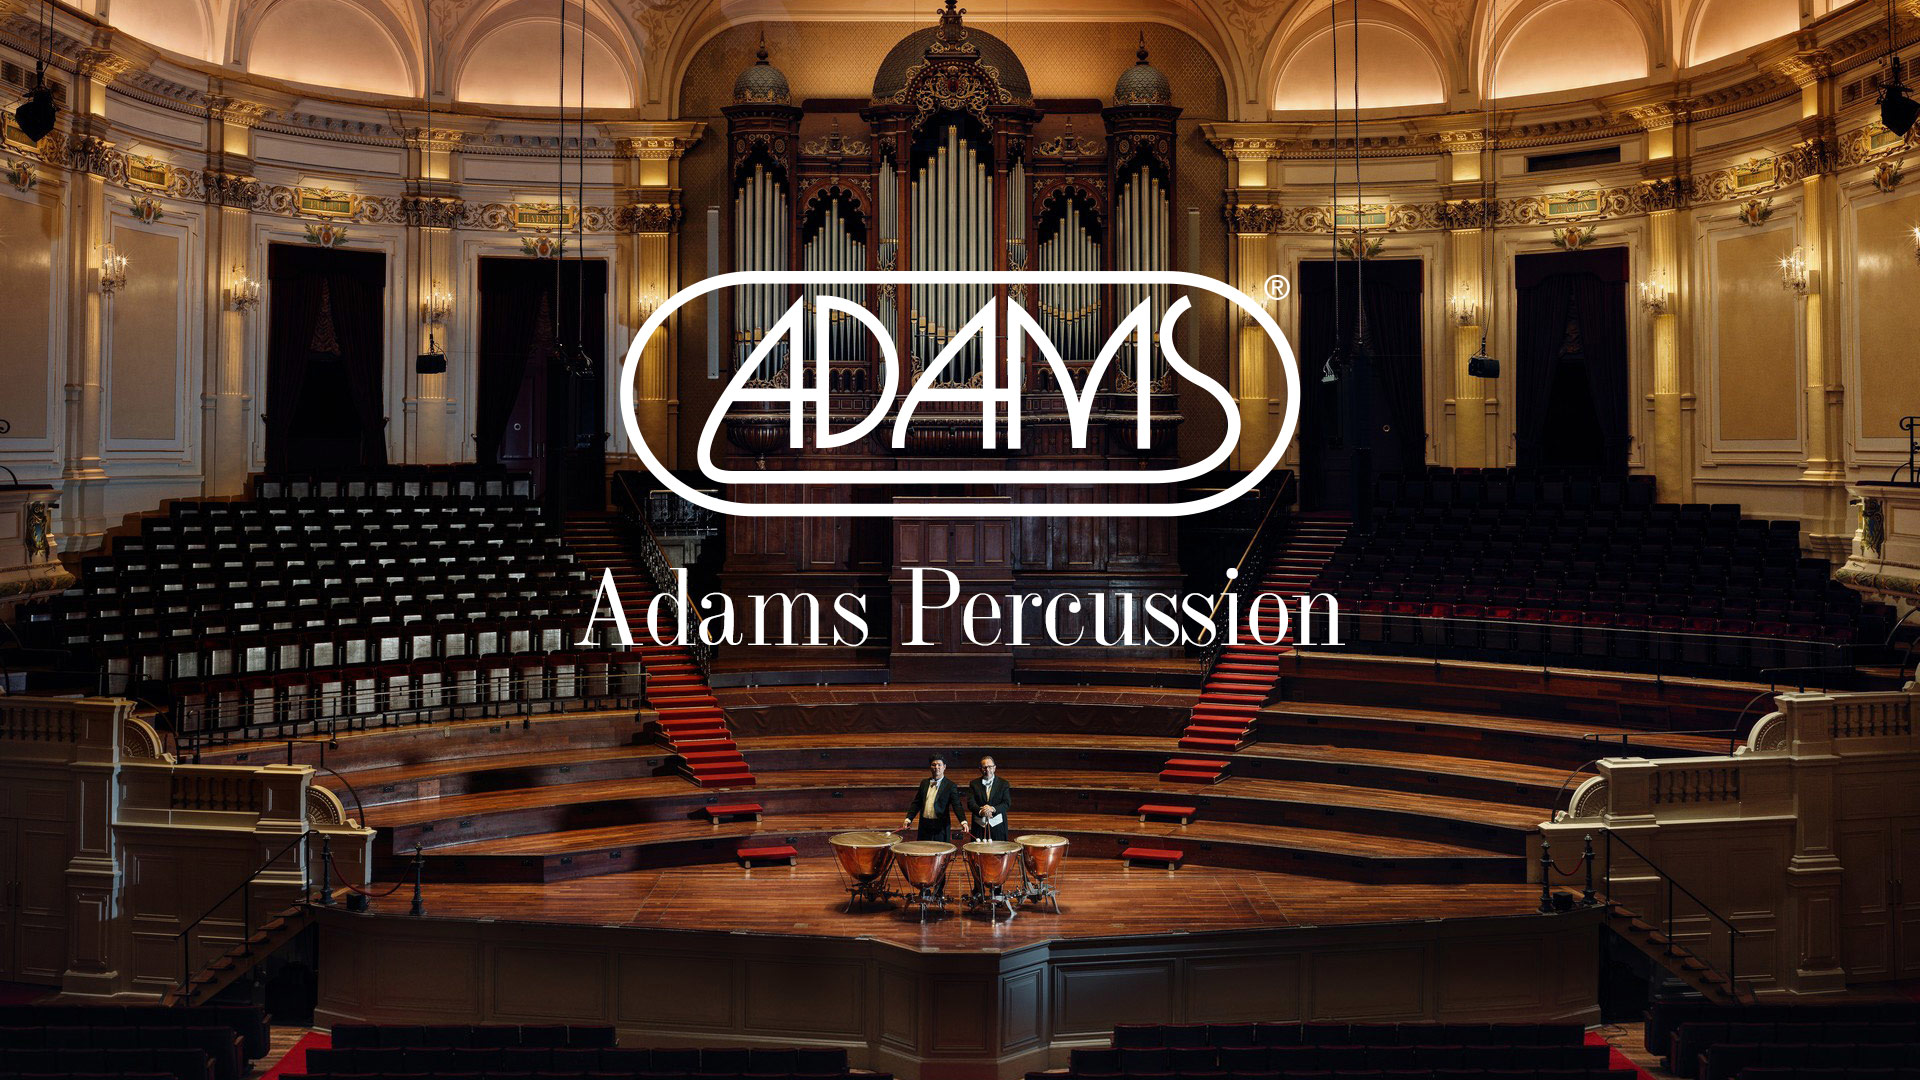 Adams percussion